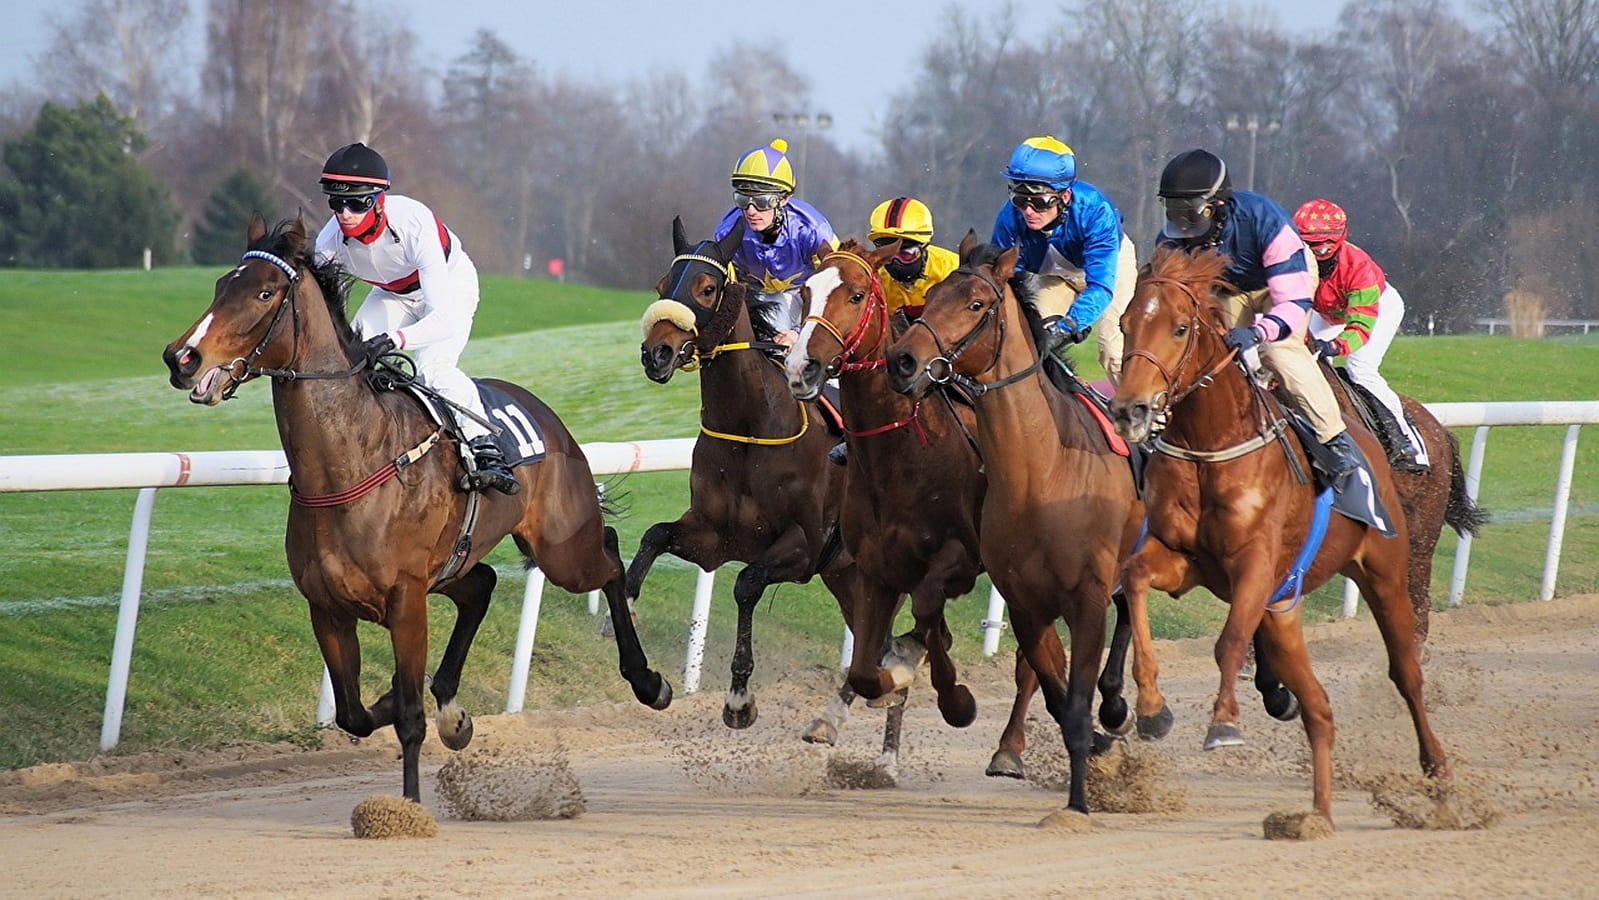 stratégies avancées de paris sur les courses de chevaux
